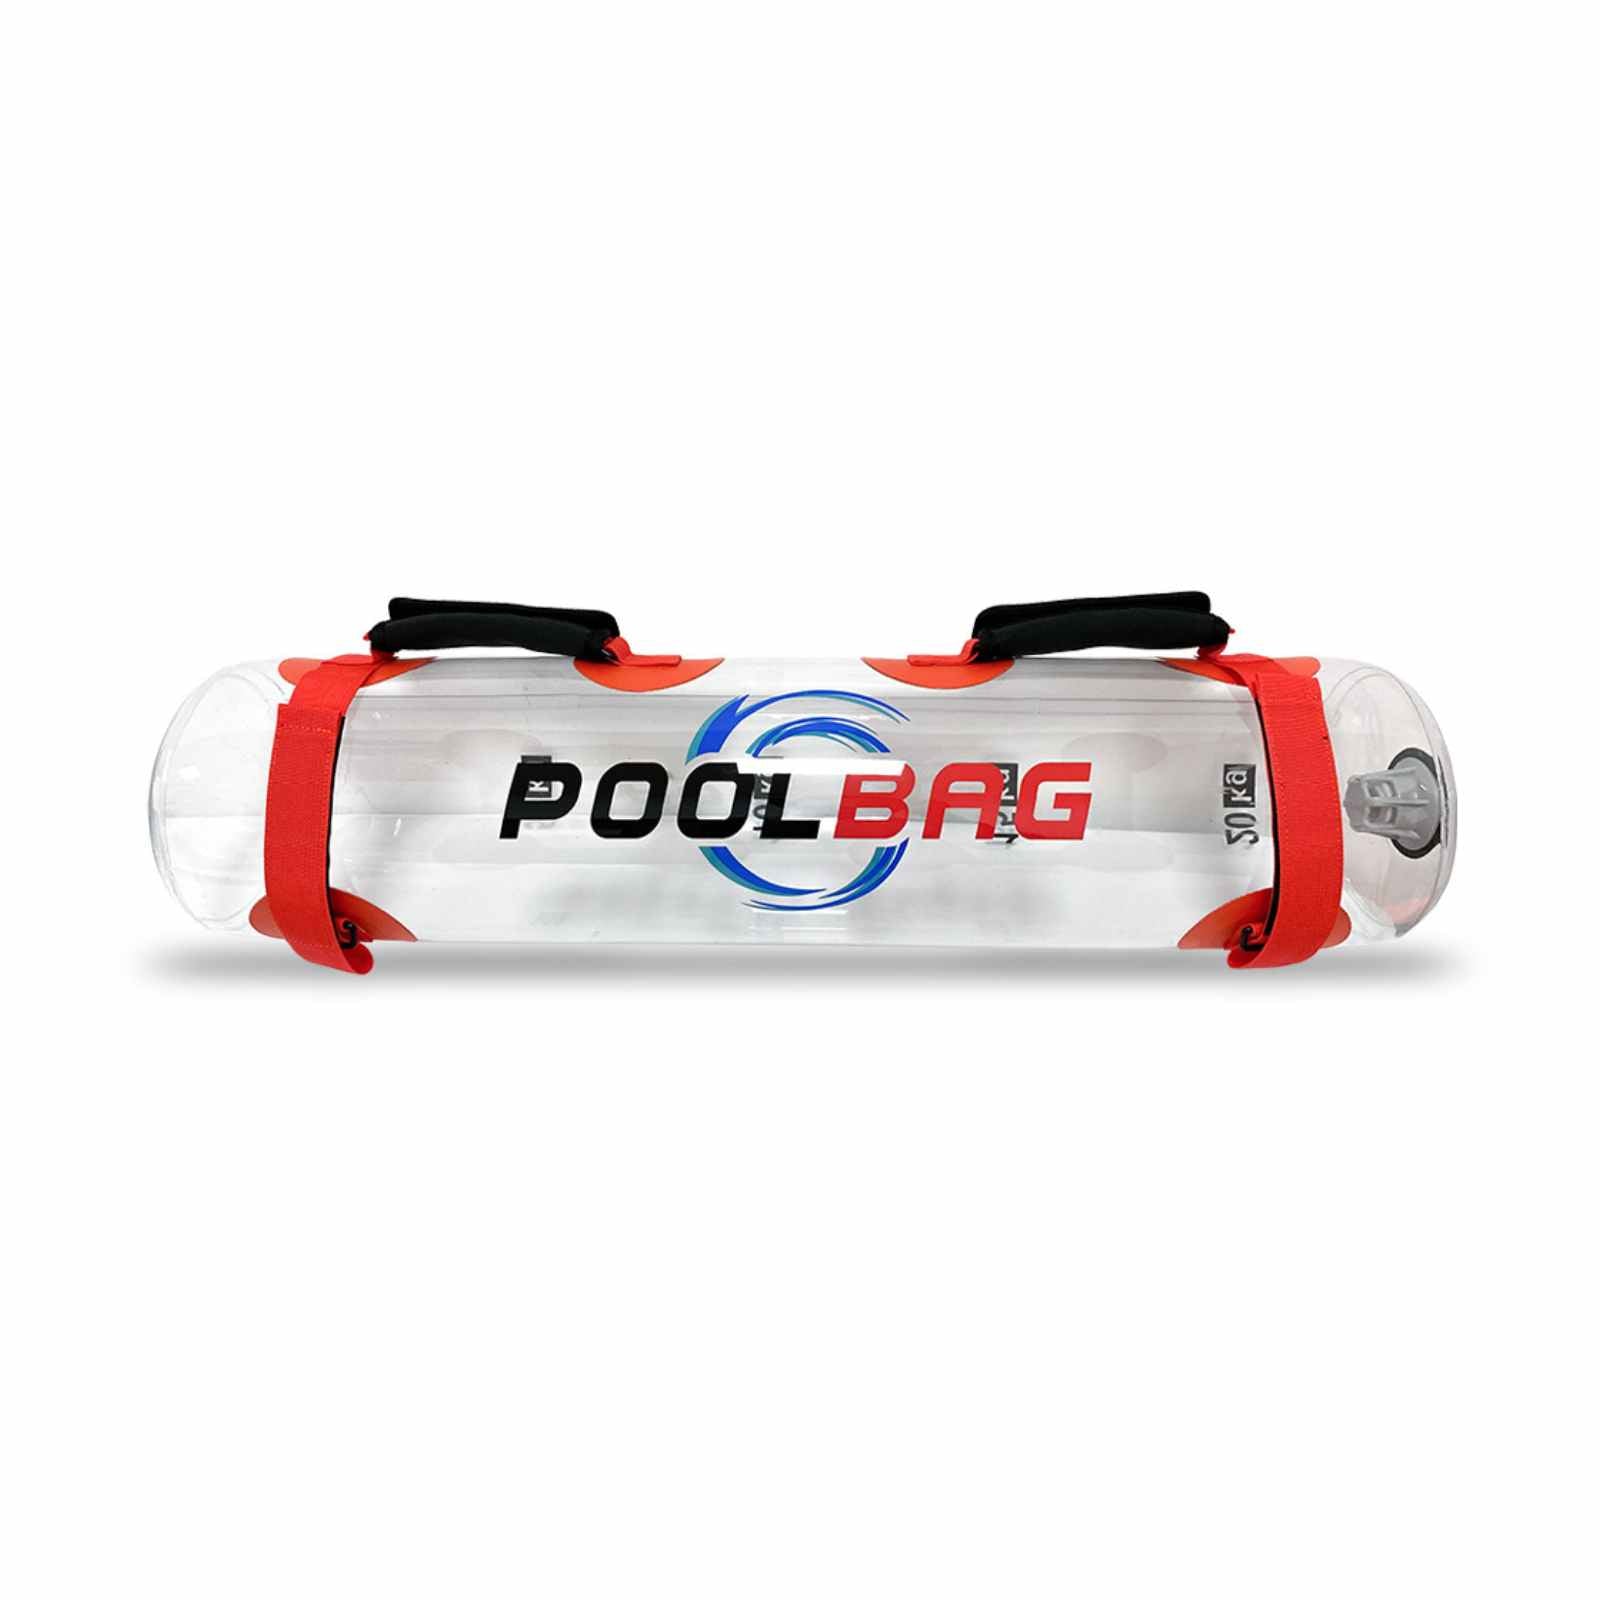 Poolbag - Allenamento Funzionale in Piscina - Massimo carico 10 lt